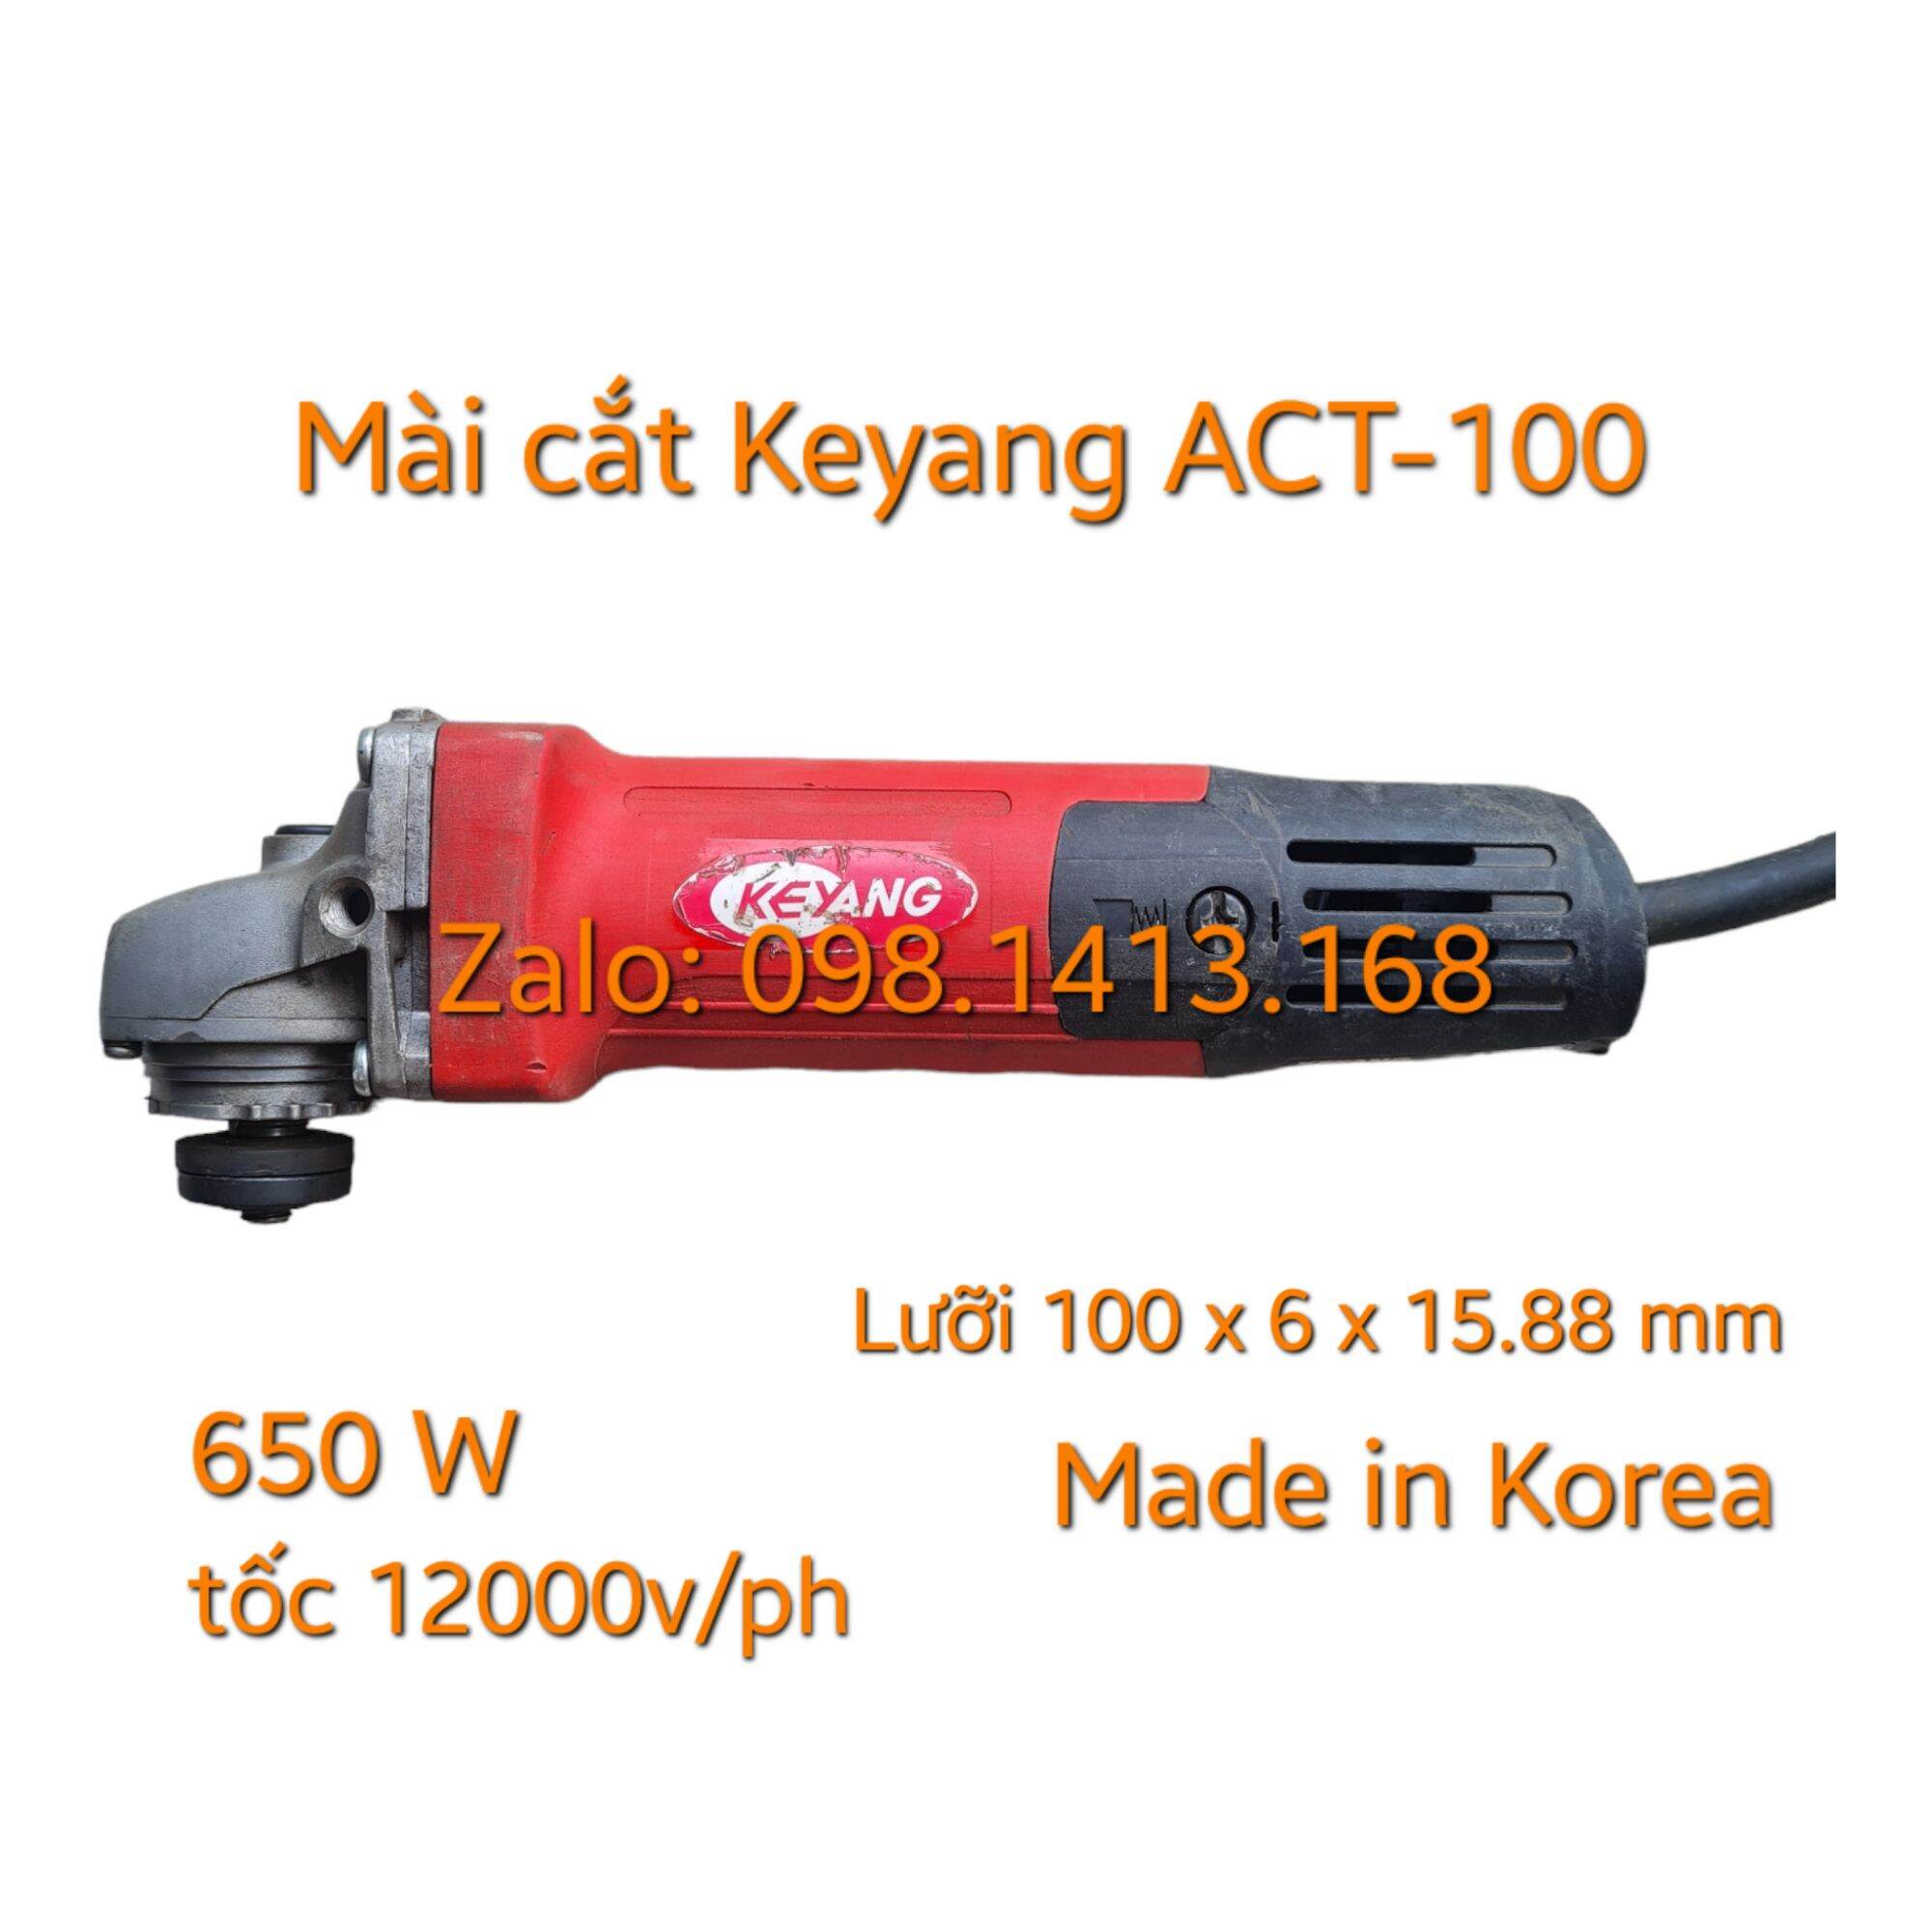 Mài cắt Keyang ACT-100SN, Hàn Quốc nguyên bản chính hãng độ mới 96%